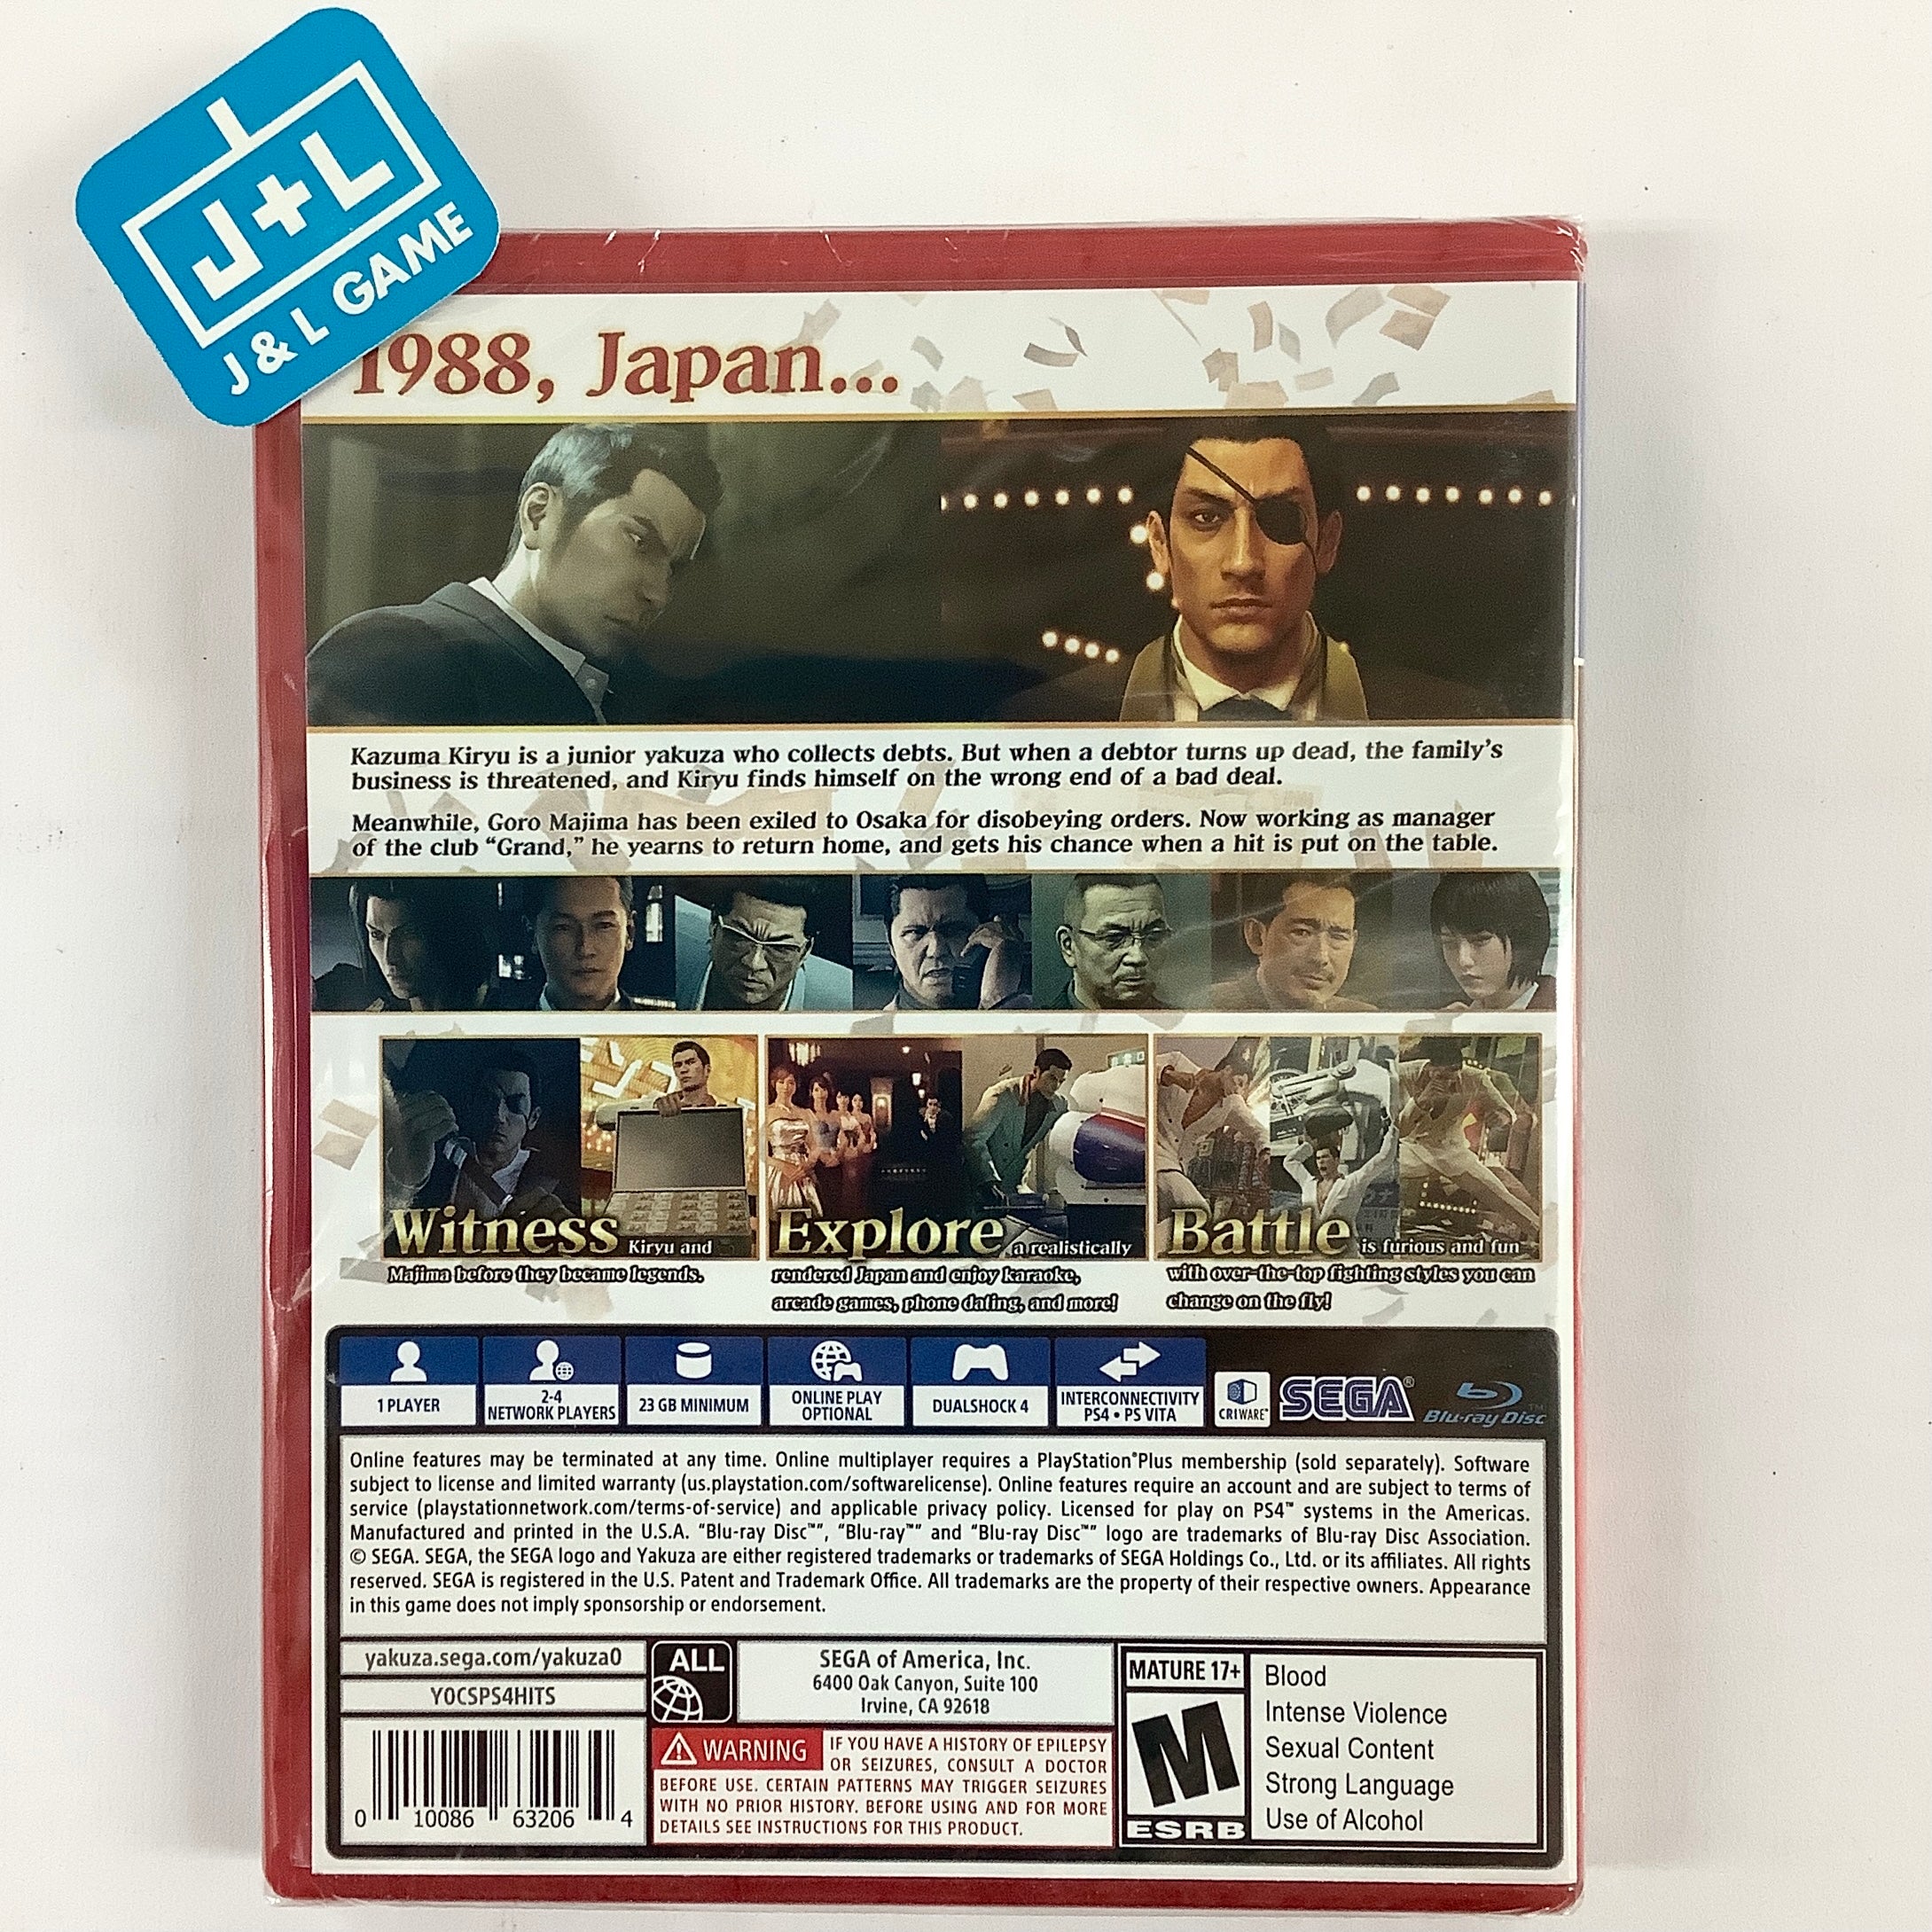 Yakuza 0 (PlayStation Hits) - (PS4) PlayStation 4 Video Games Sega   